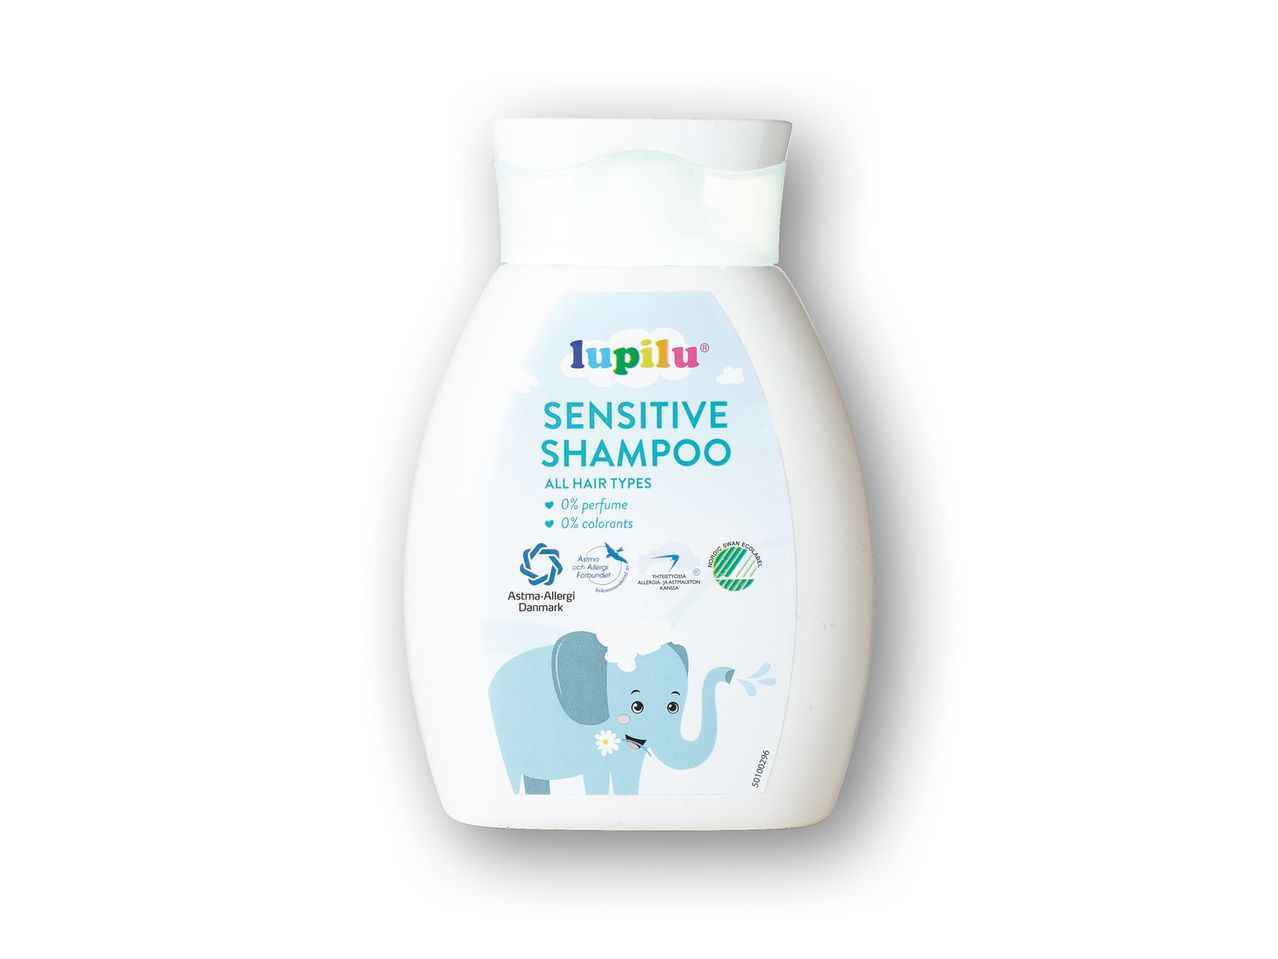 Vis i fuld skærm: Lupilu Sensitive shampoo - Billede 1